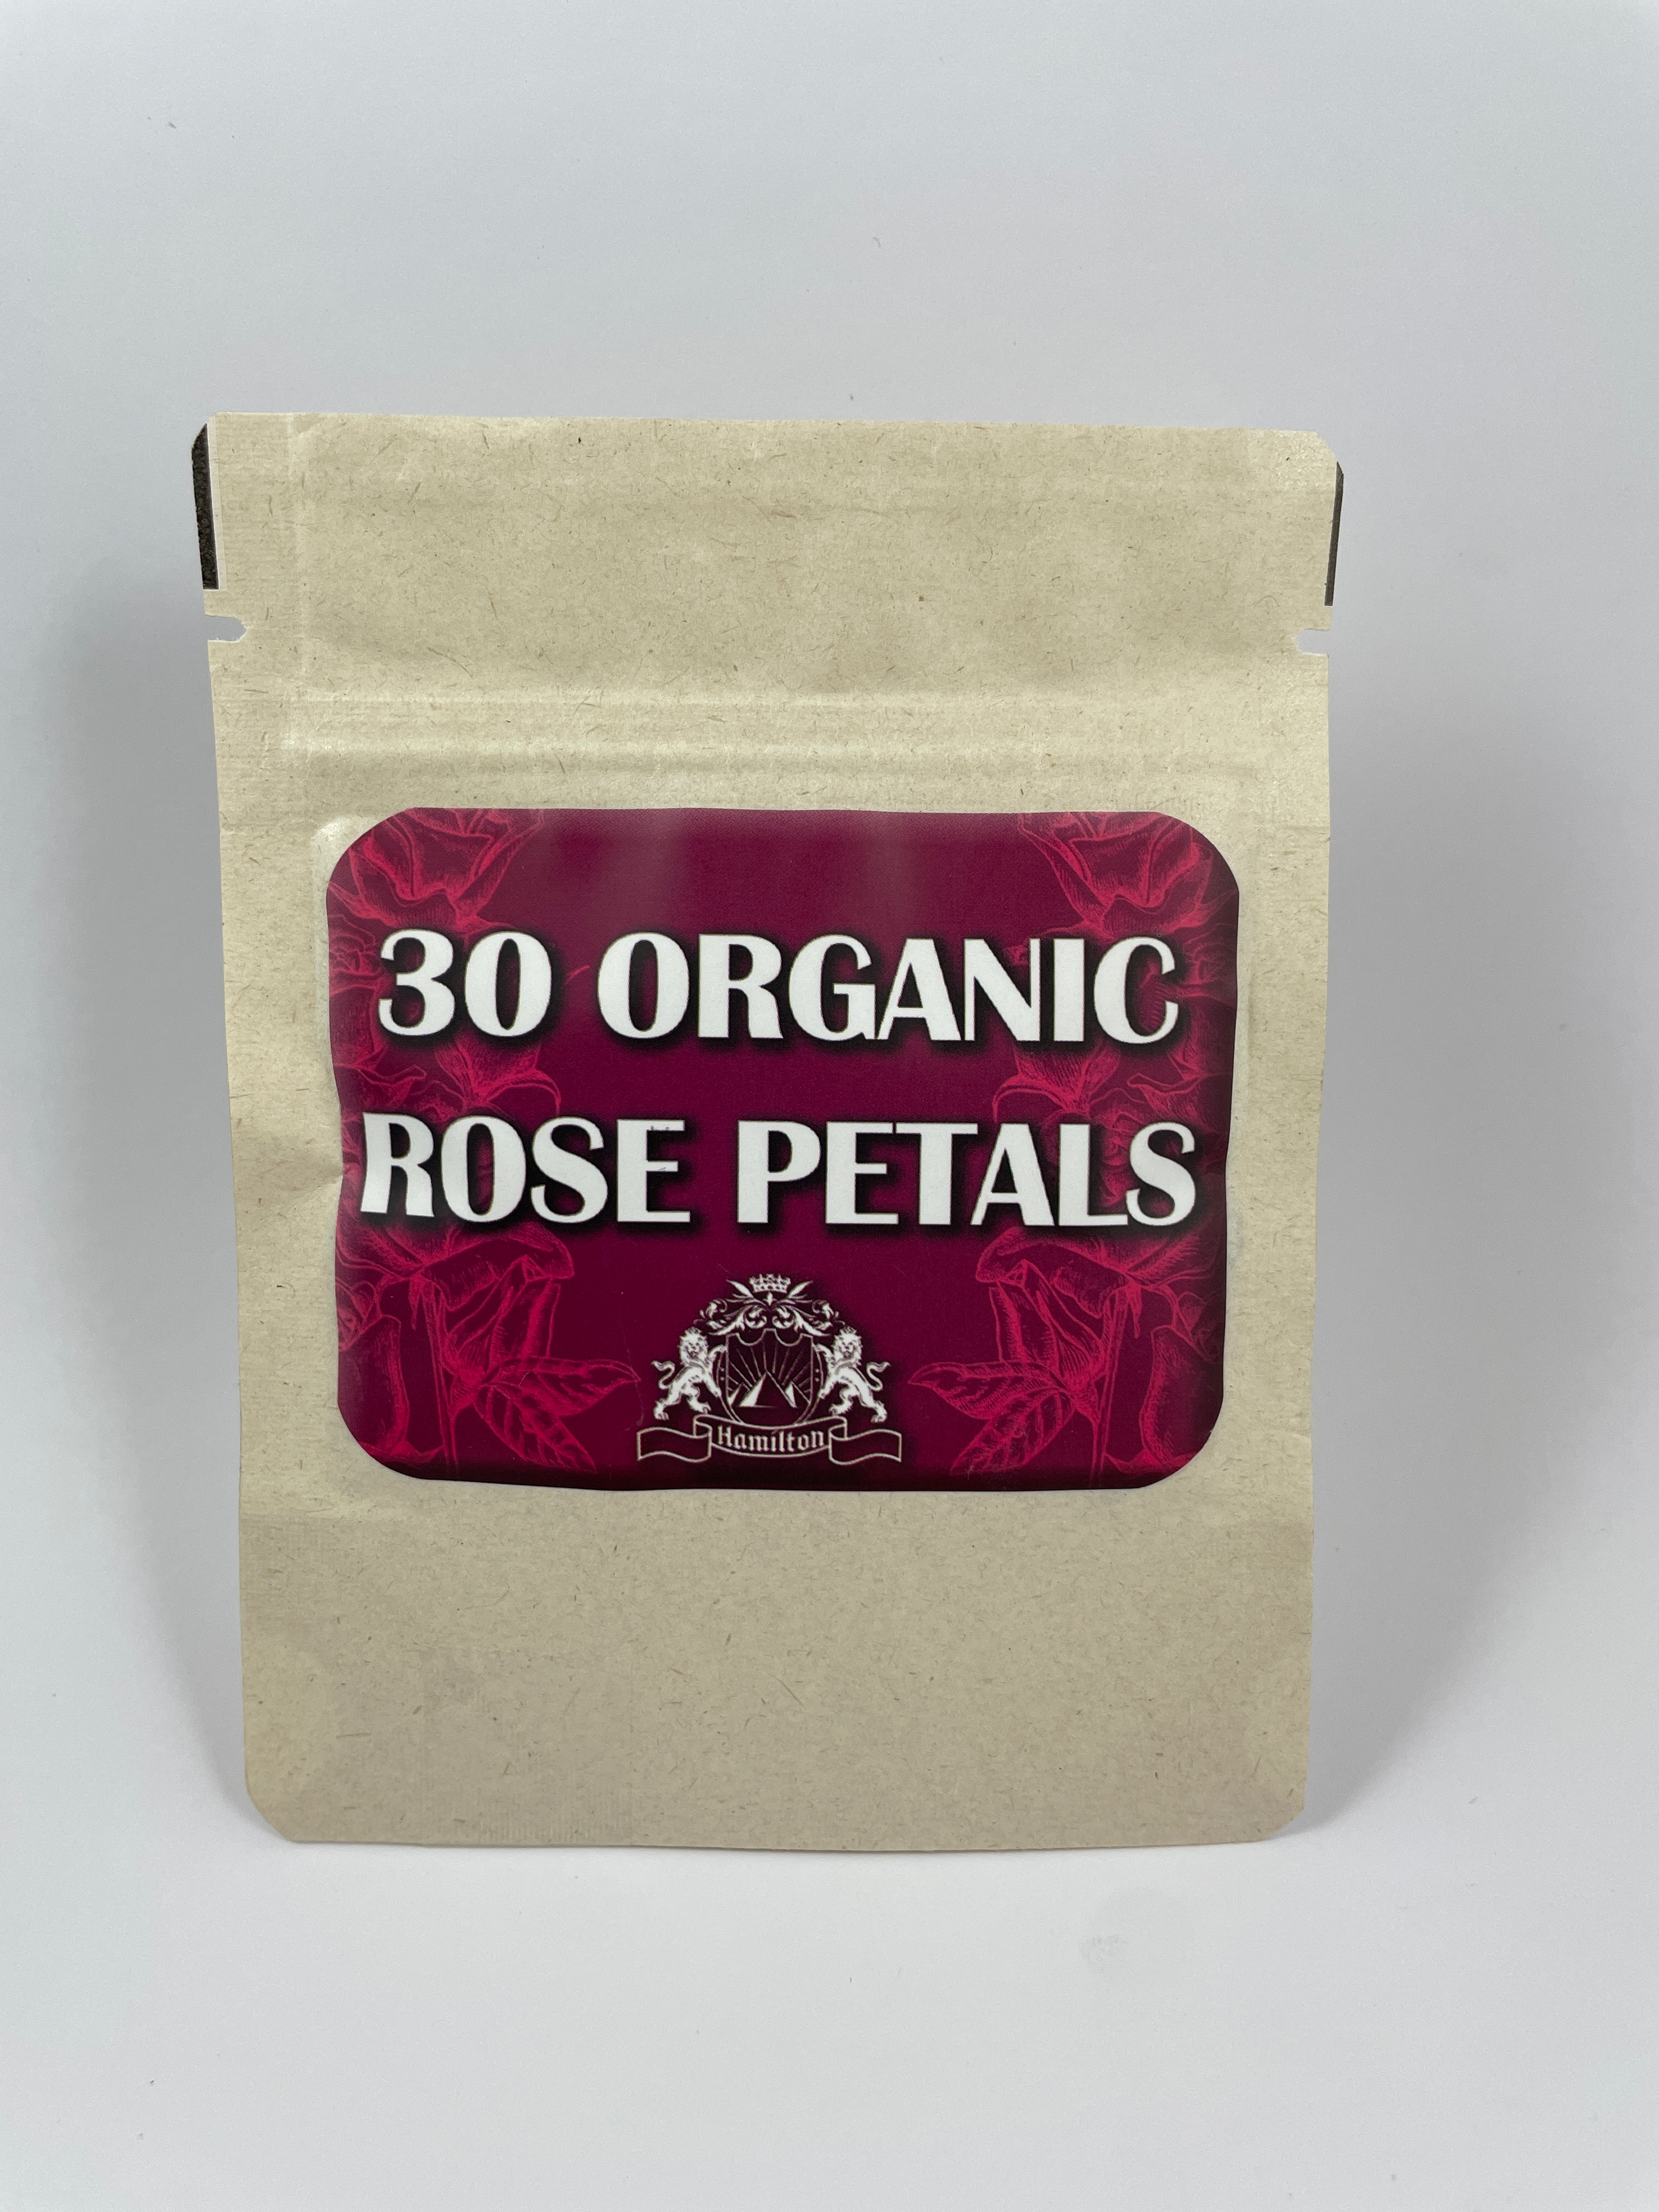 Organic rose petals for rolling, rose petal rolling paper